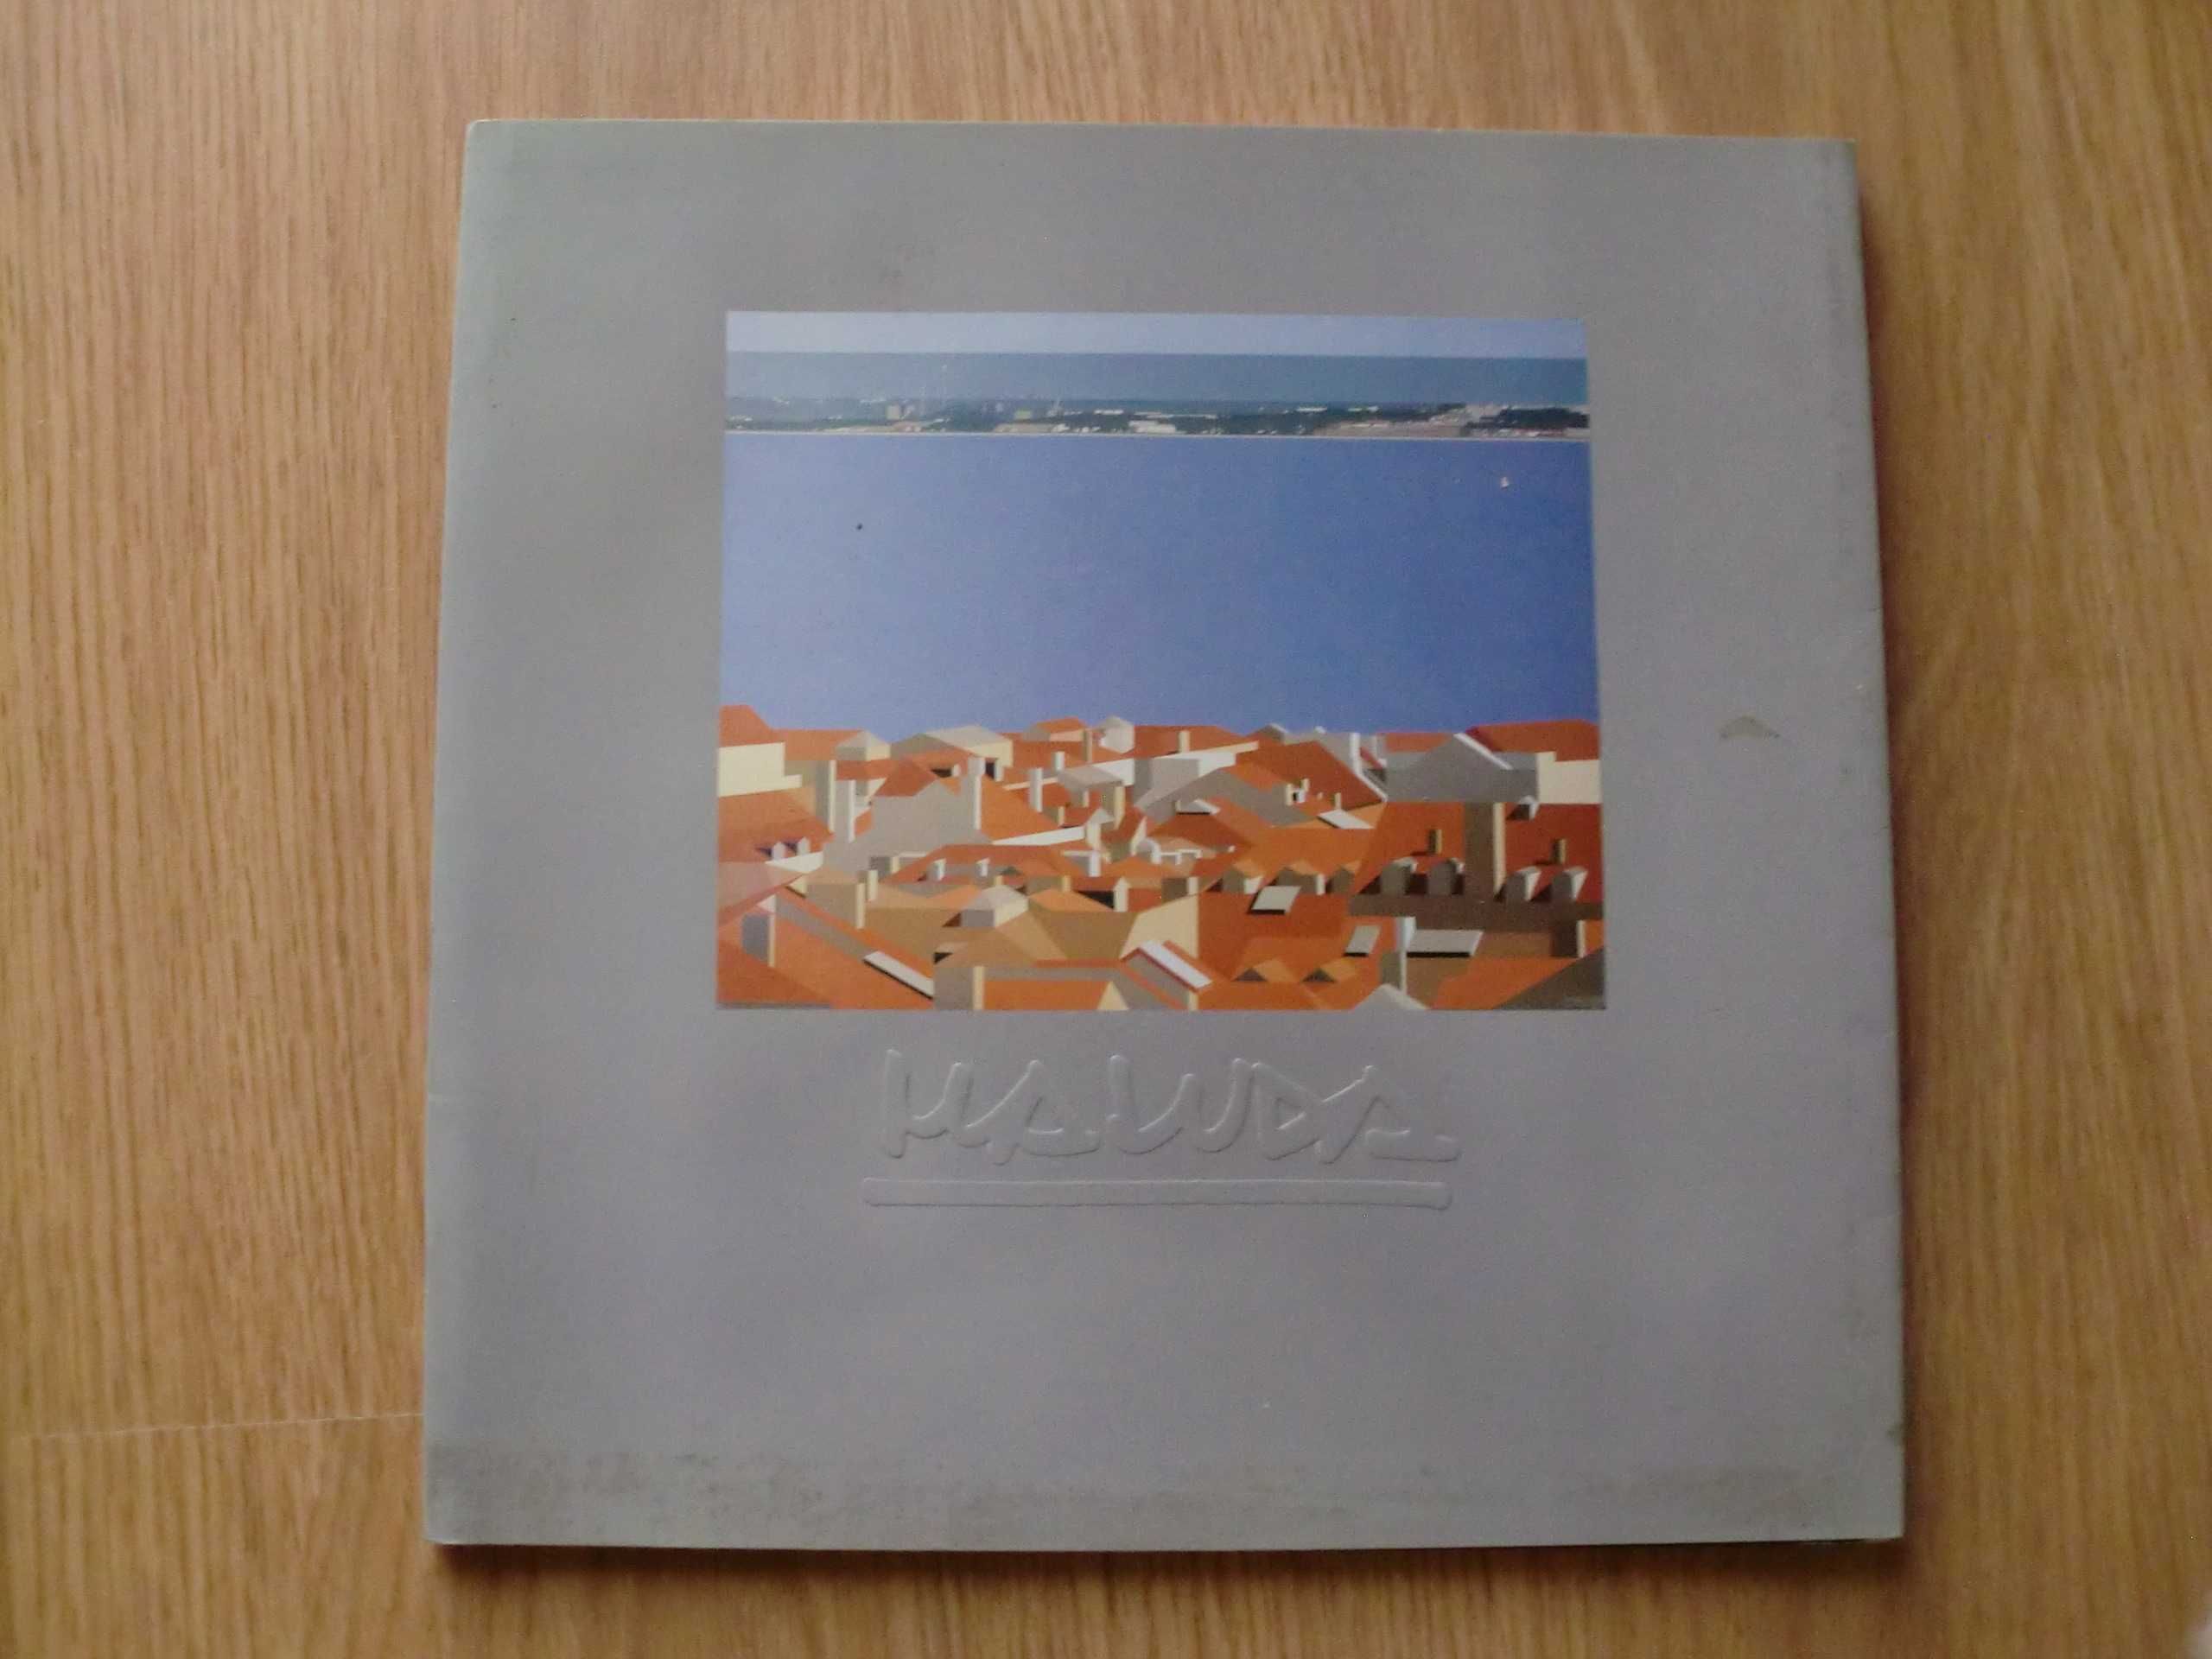 Maluda - Catálogo de exposição 1989